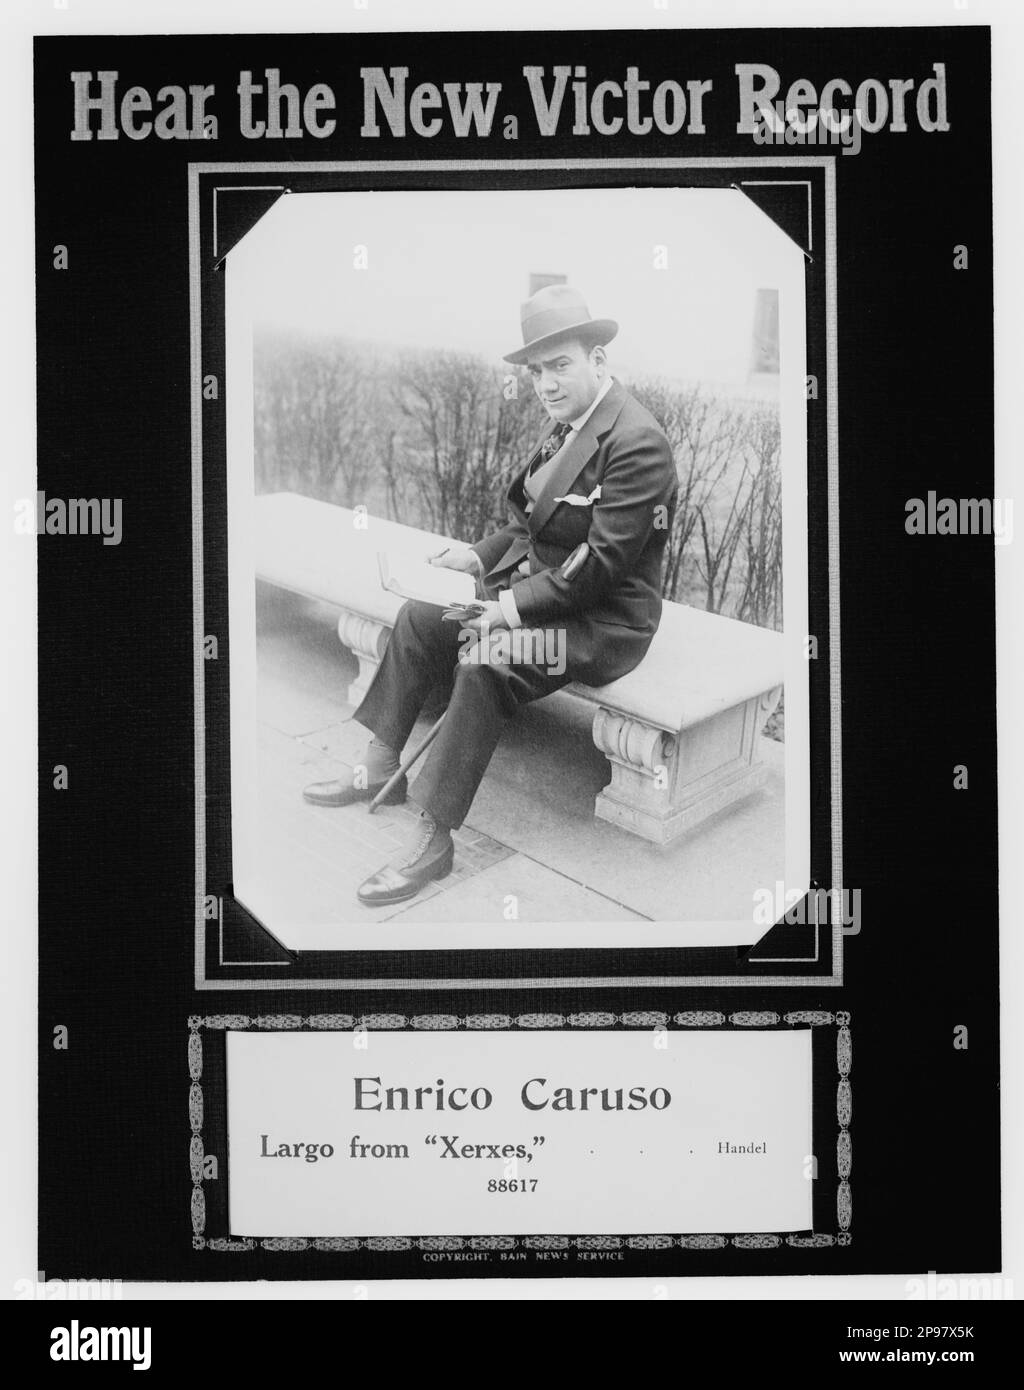 1916 Ca , New York , USA : Werbung des italienischen Opernsängers Tenore ENRICO CARUSO ( Napoli 1873 - 1921 ) für den neuen 78rpm Rekord XERXES ( von Handel ) für Victor Record Talking Machine . - MUSICA CLASSICA - KLASSISCH - MUSIK - Porträt - Rituto - cappello - Hut - Kragen - Cravatta - TENORE - OPERA LIRICA - TEATRO - THEATER - Leser - Lettore - Panchina - Bastone da passeggio - pubblicita' ---- Archivio GBB Stockfoto